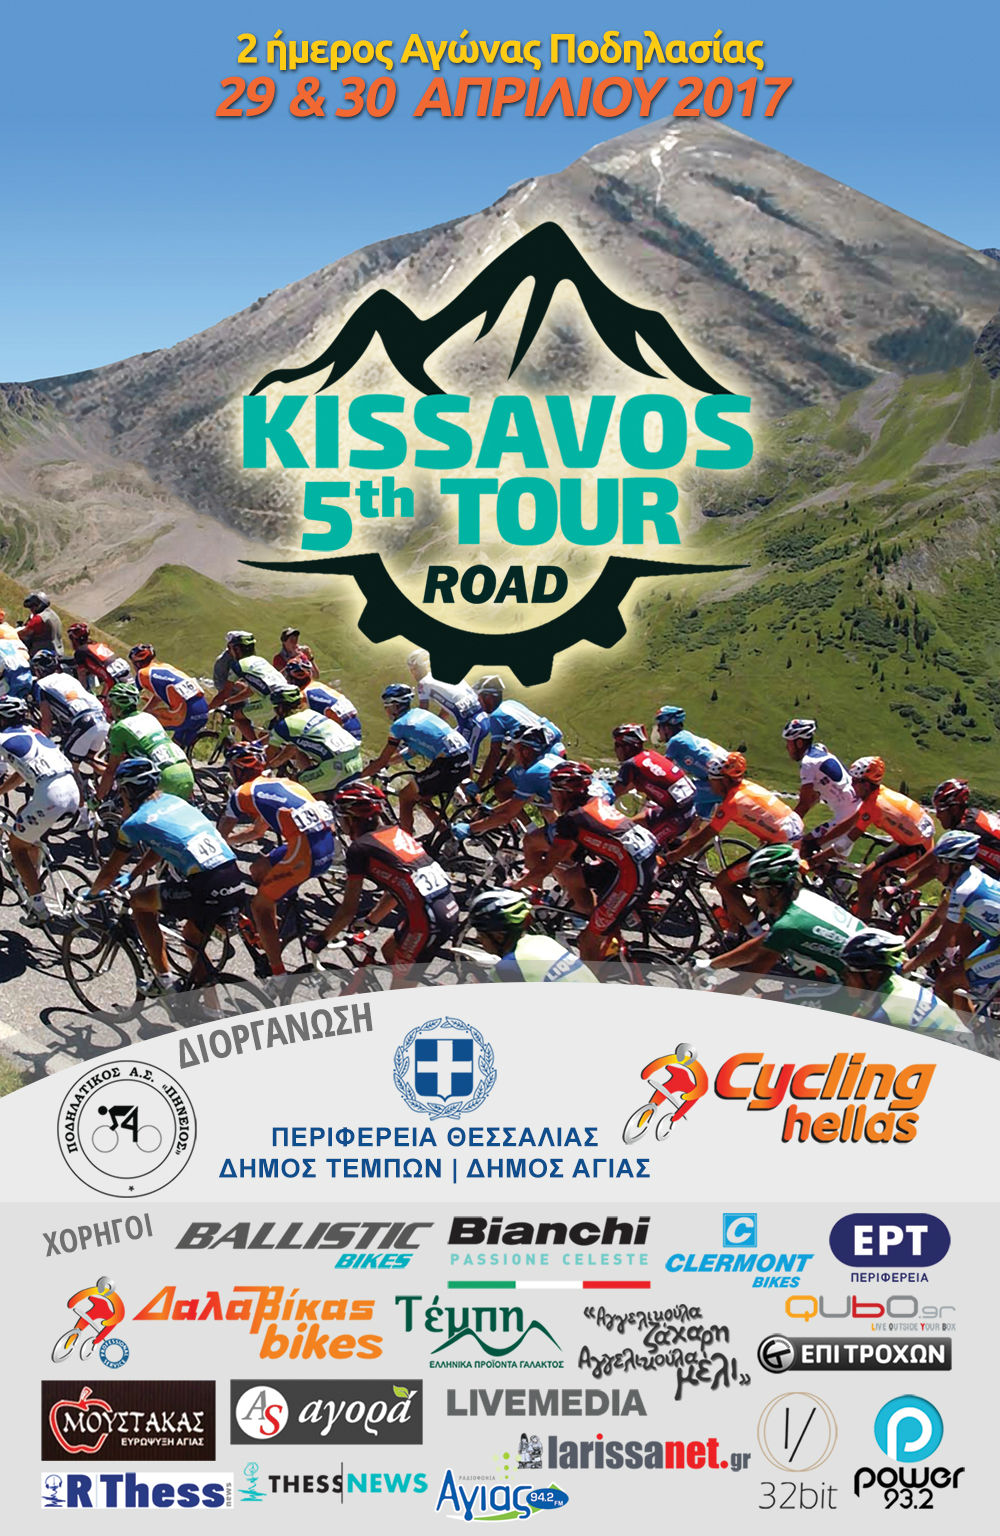 ΠΡΟΚΗΡΥΞΗ 5th Kissavos Road Tour 2017